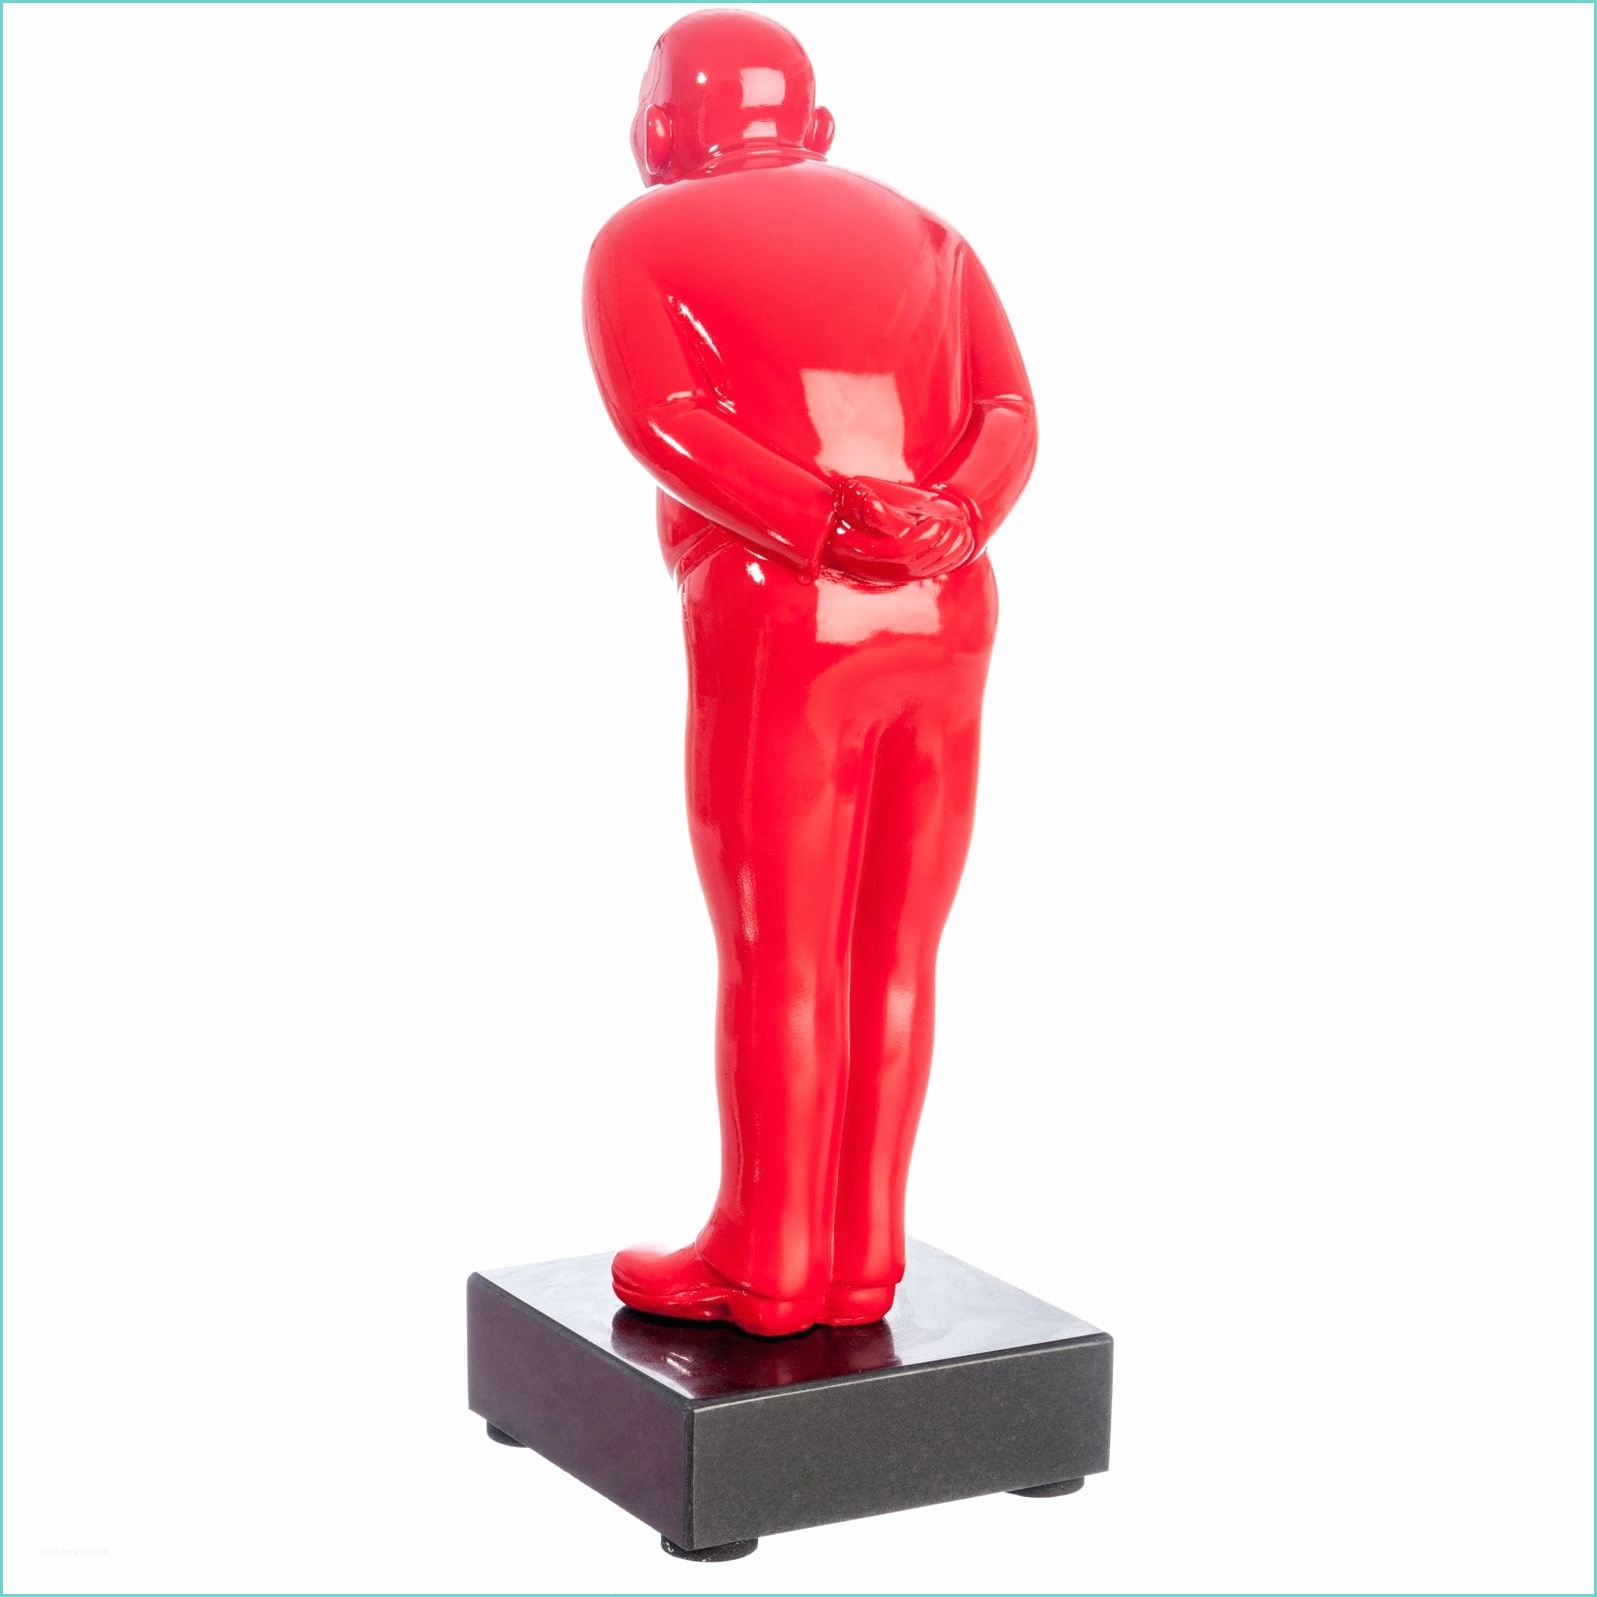 Objet Deco Design Statue soldes Deco – Statue Design Bonhomme Rouge forium